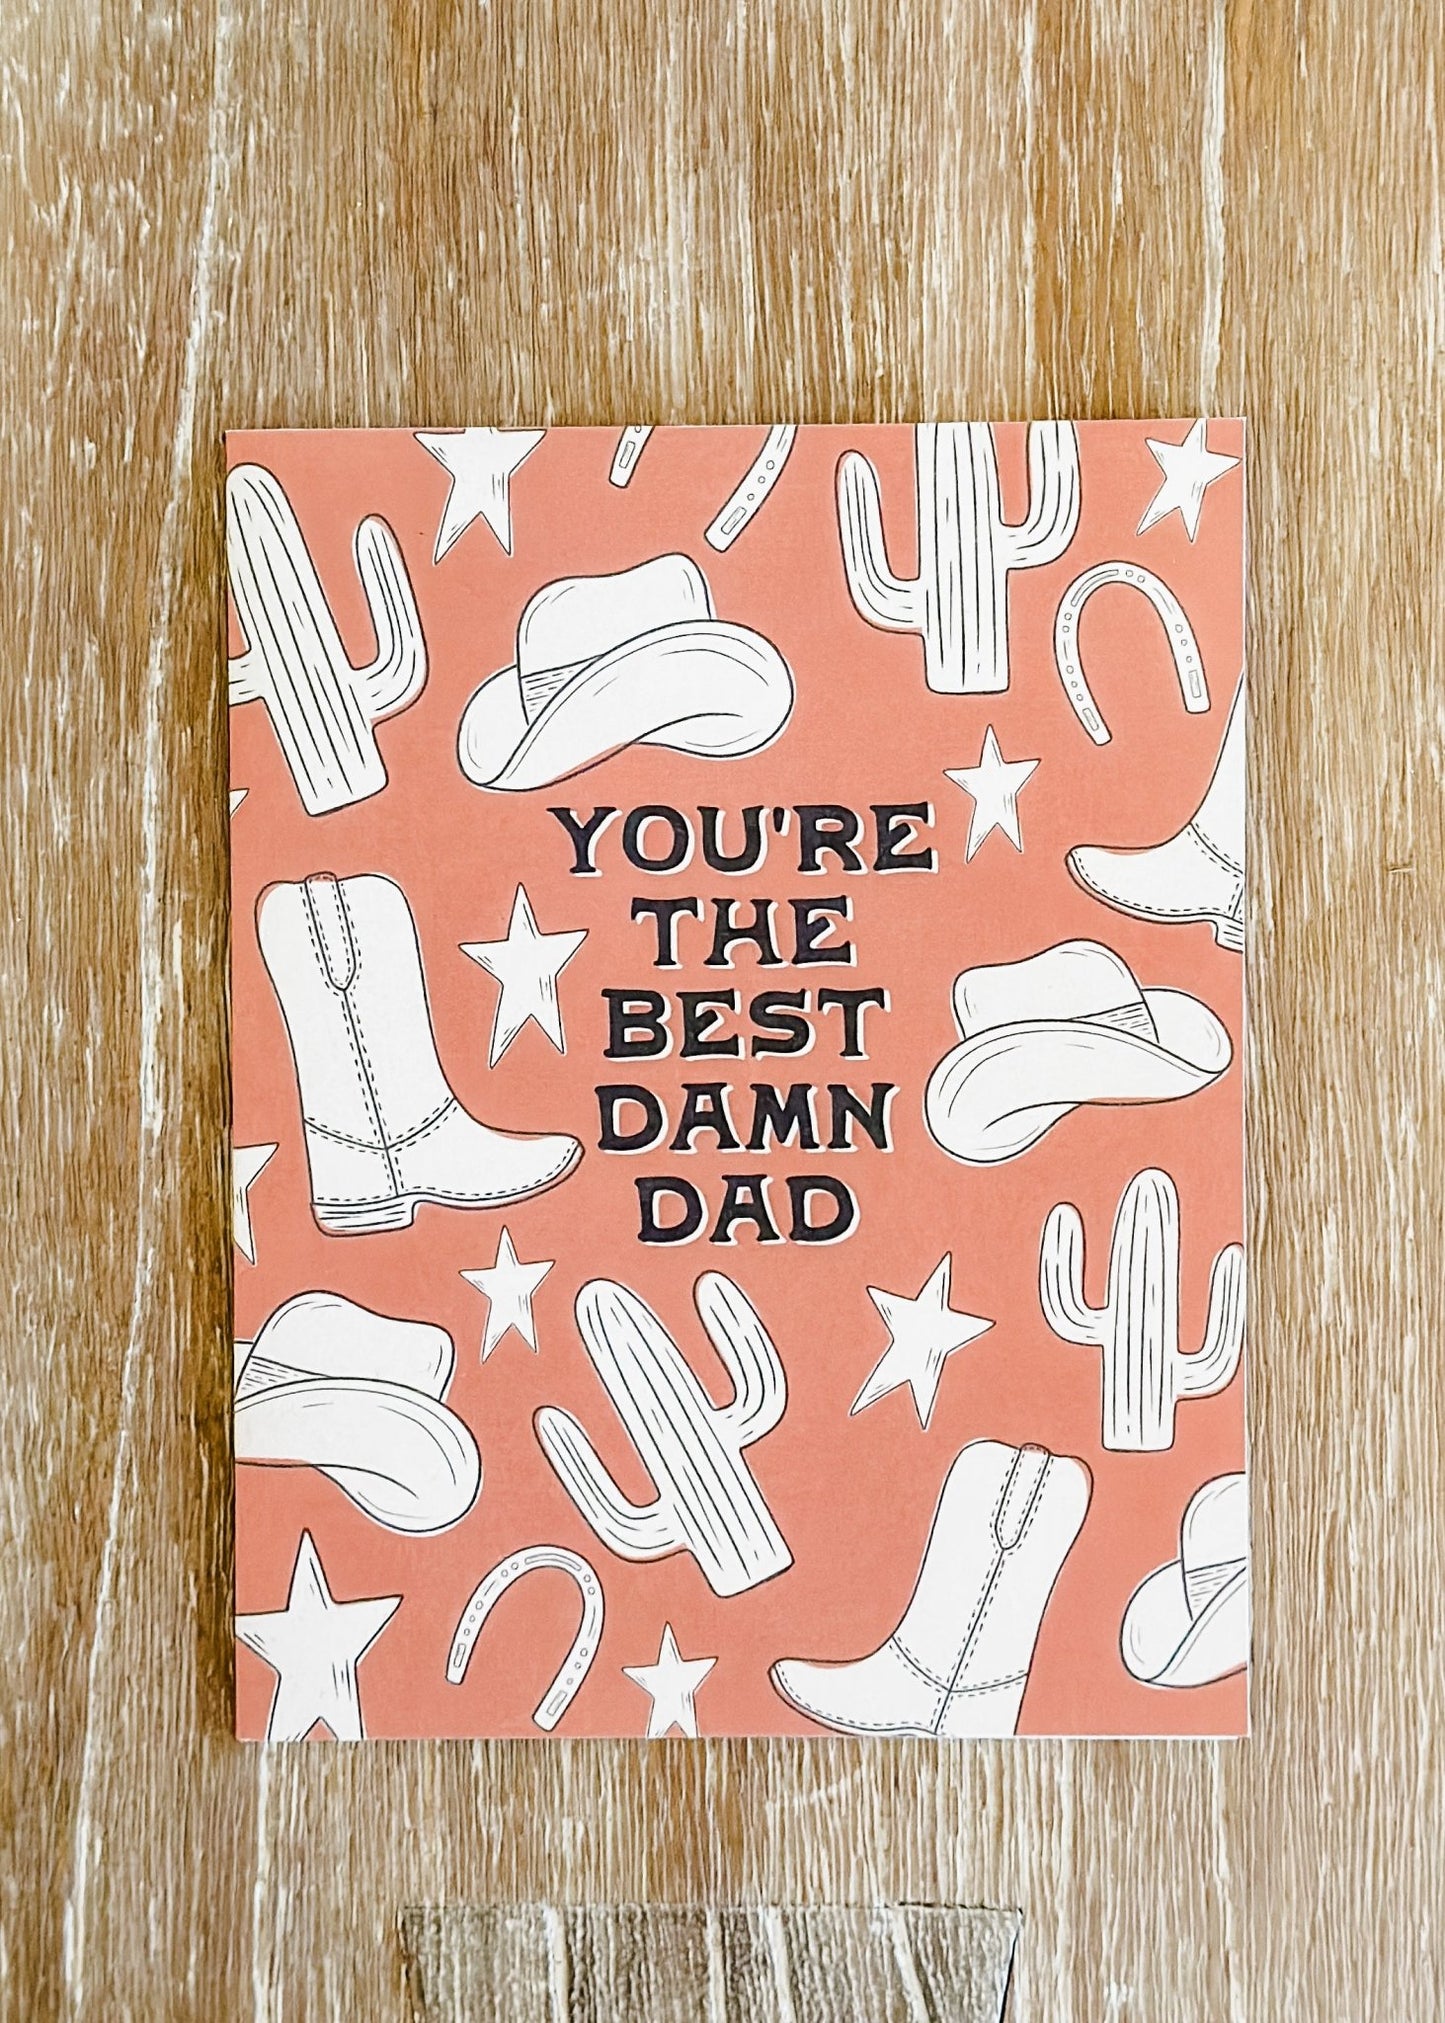 Best Damn Dad Card - The Farmhouse